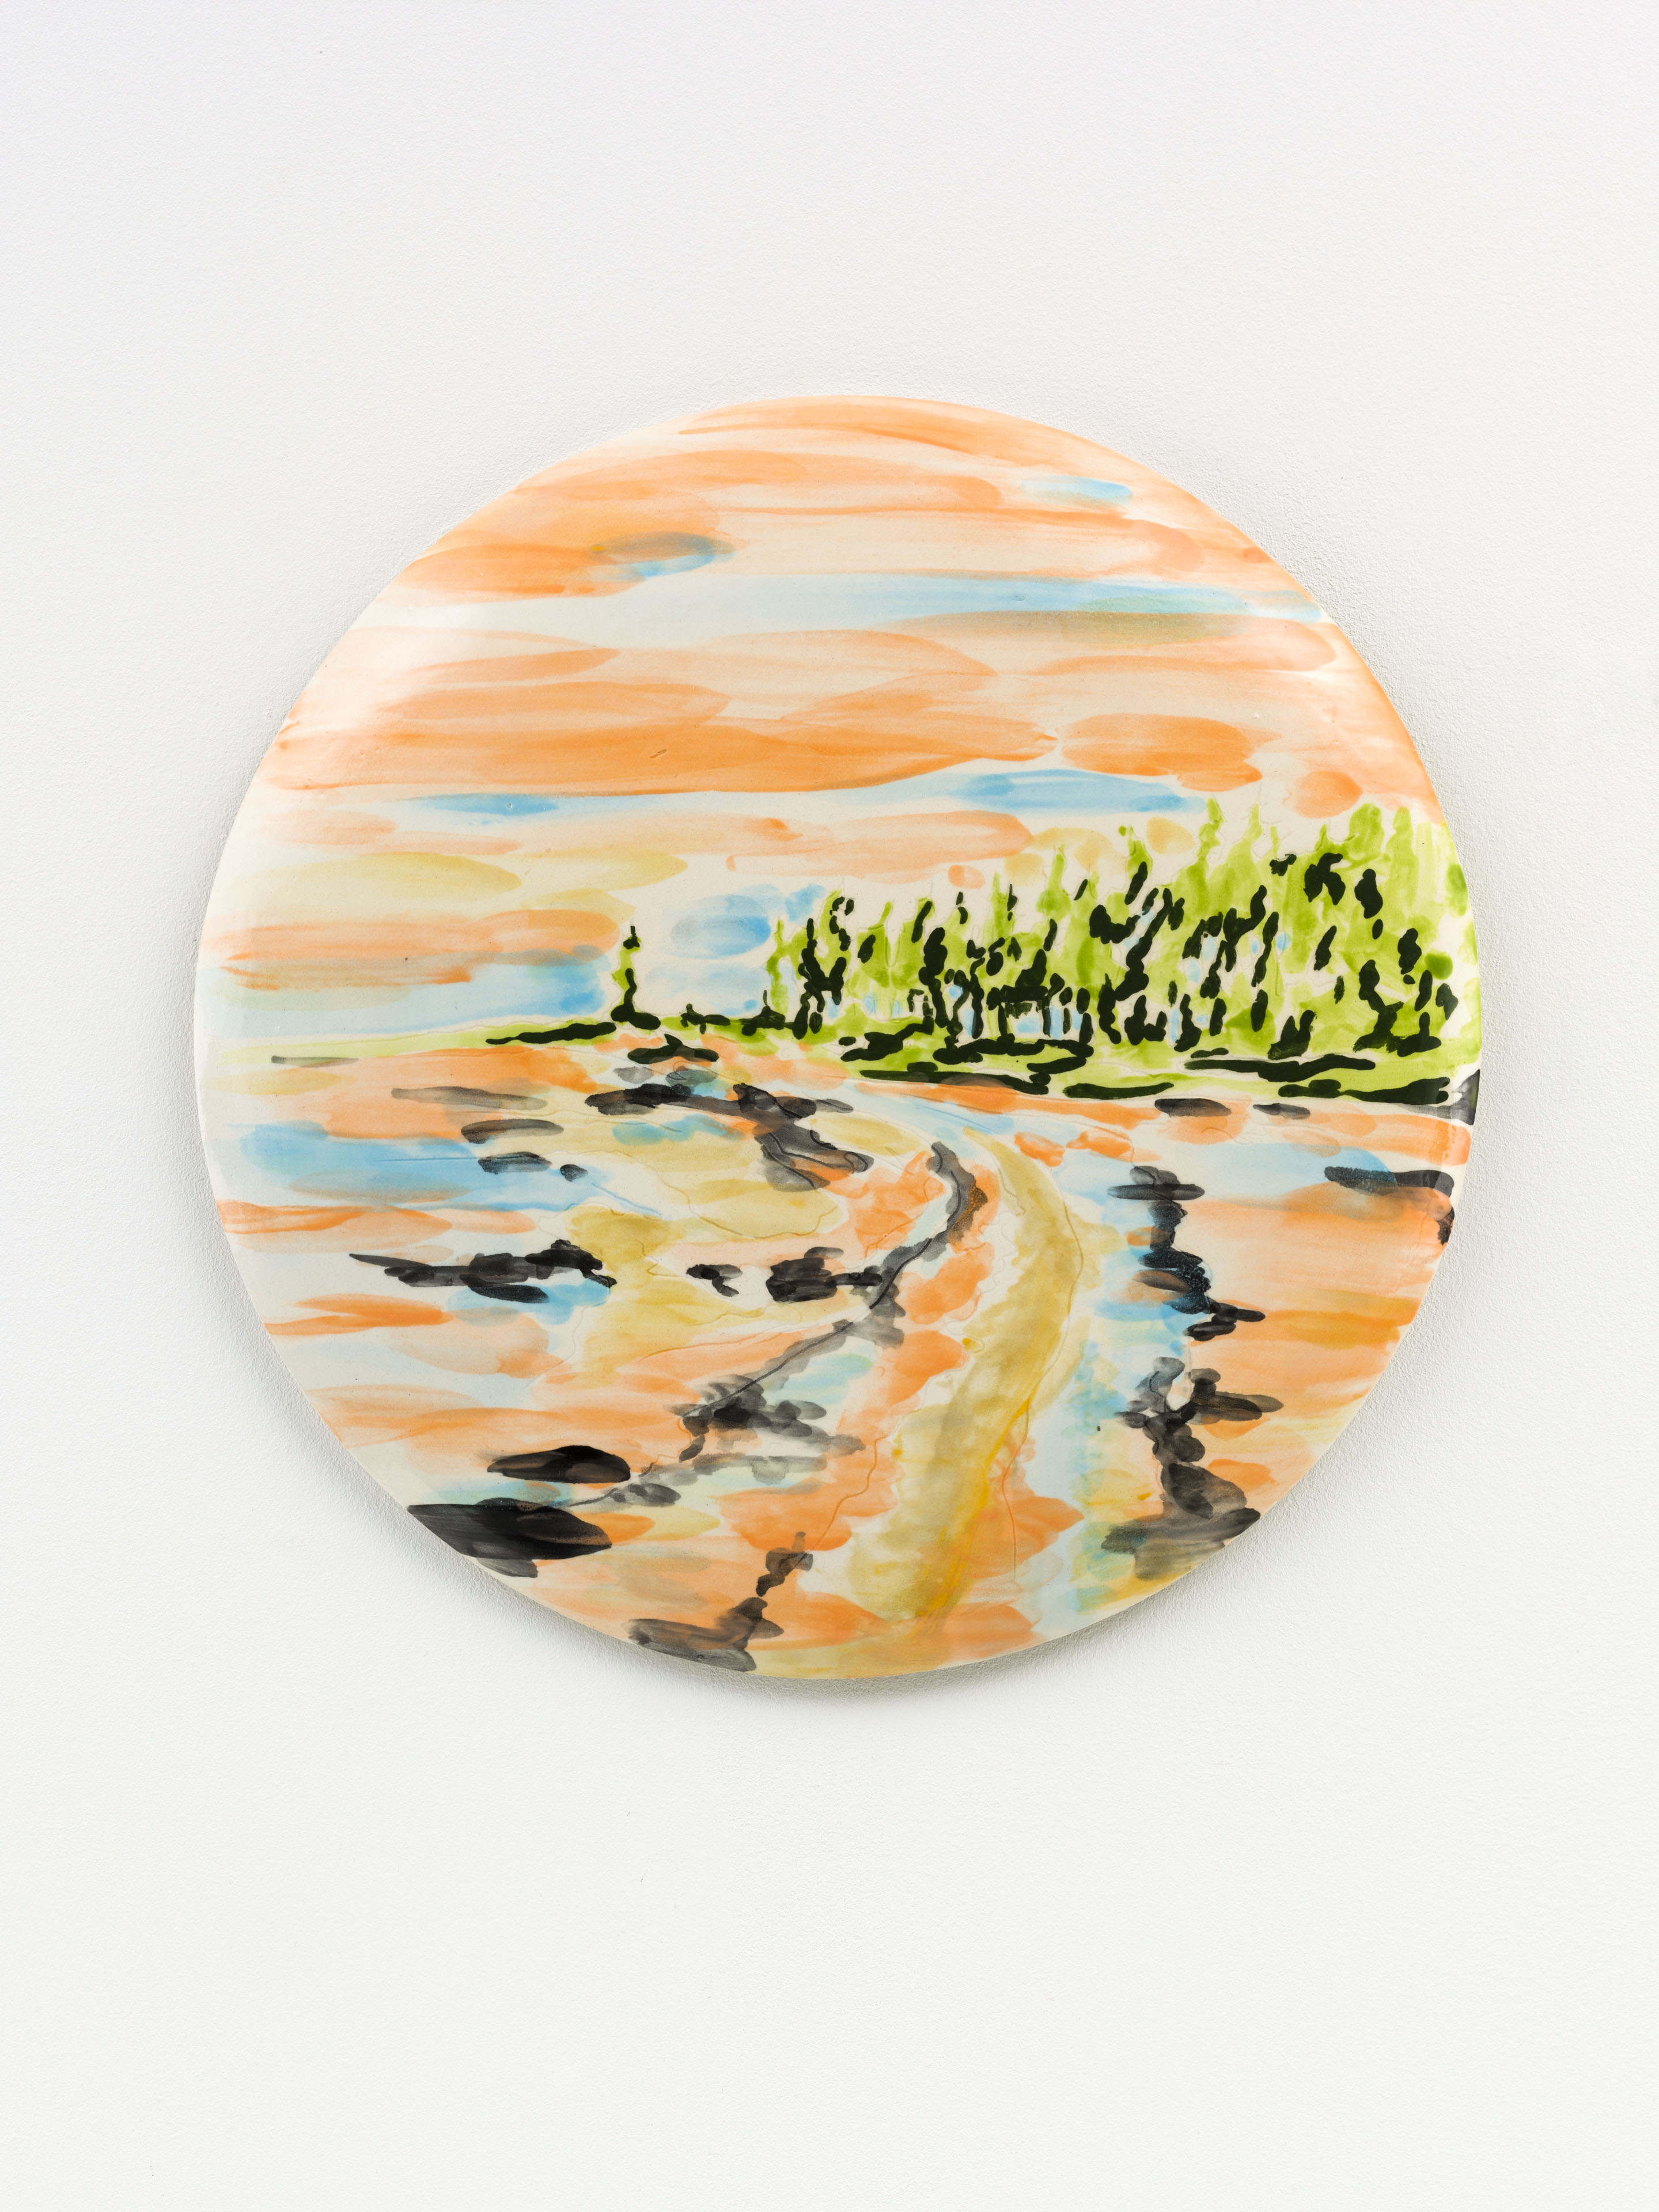 "Primavera", painted ceramic tile, 33 x 33 cm., NL 2015